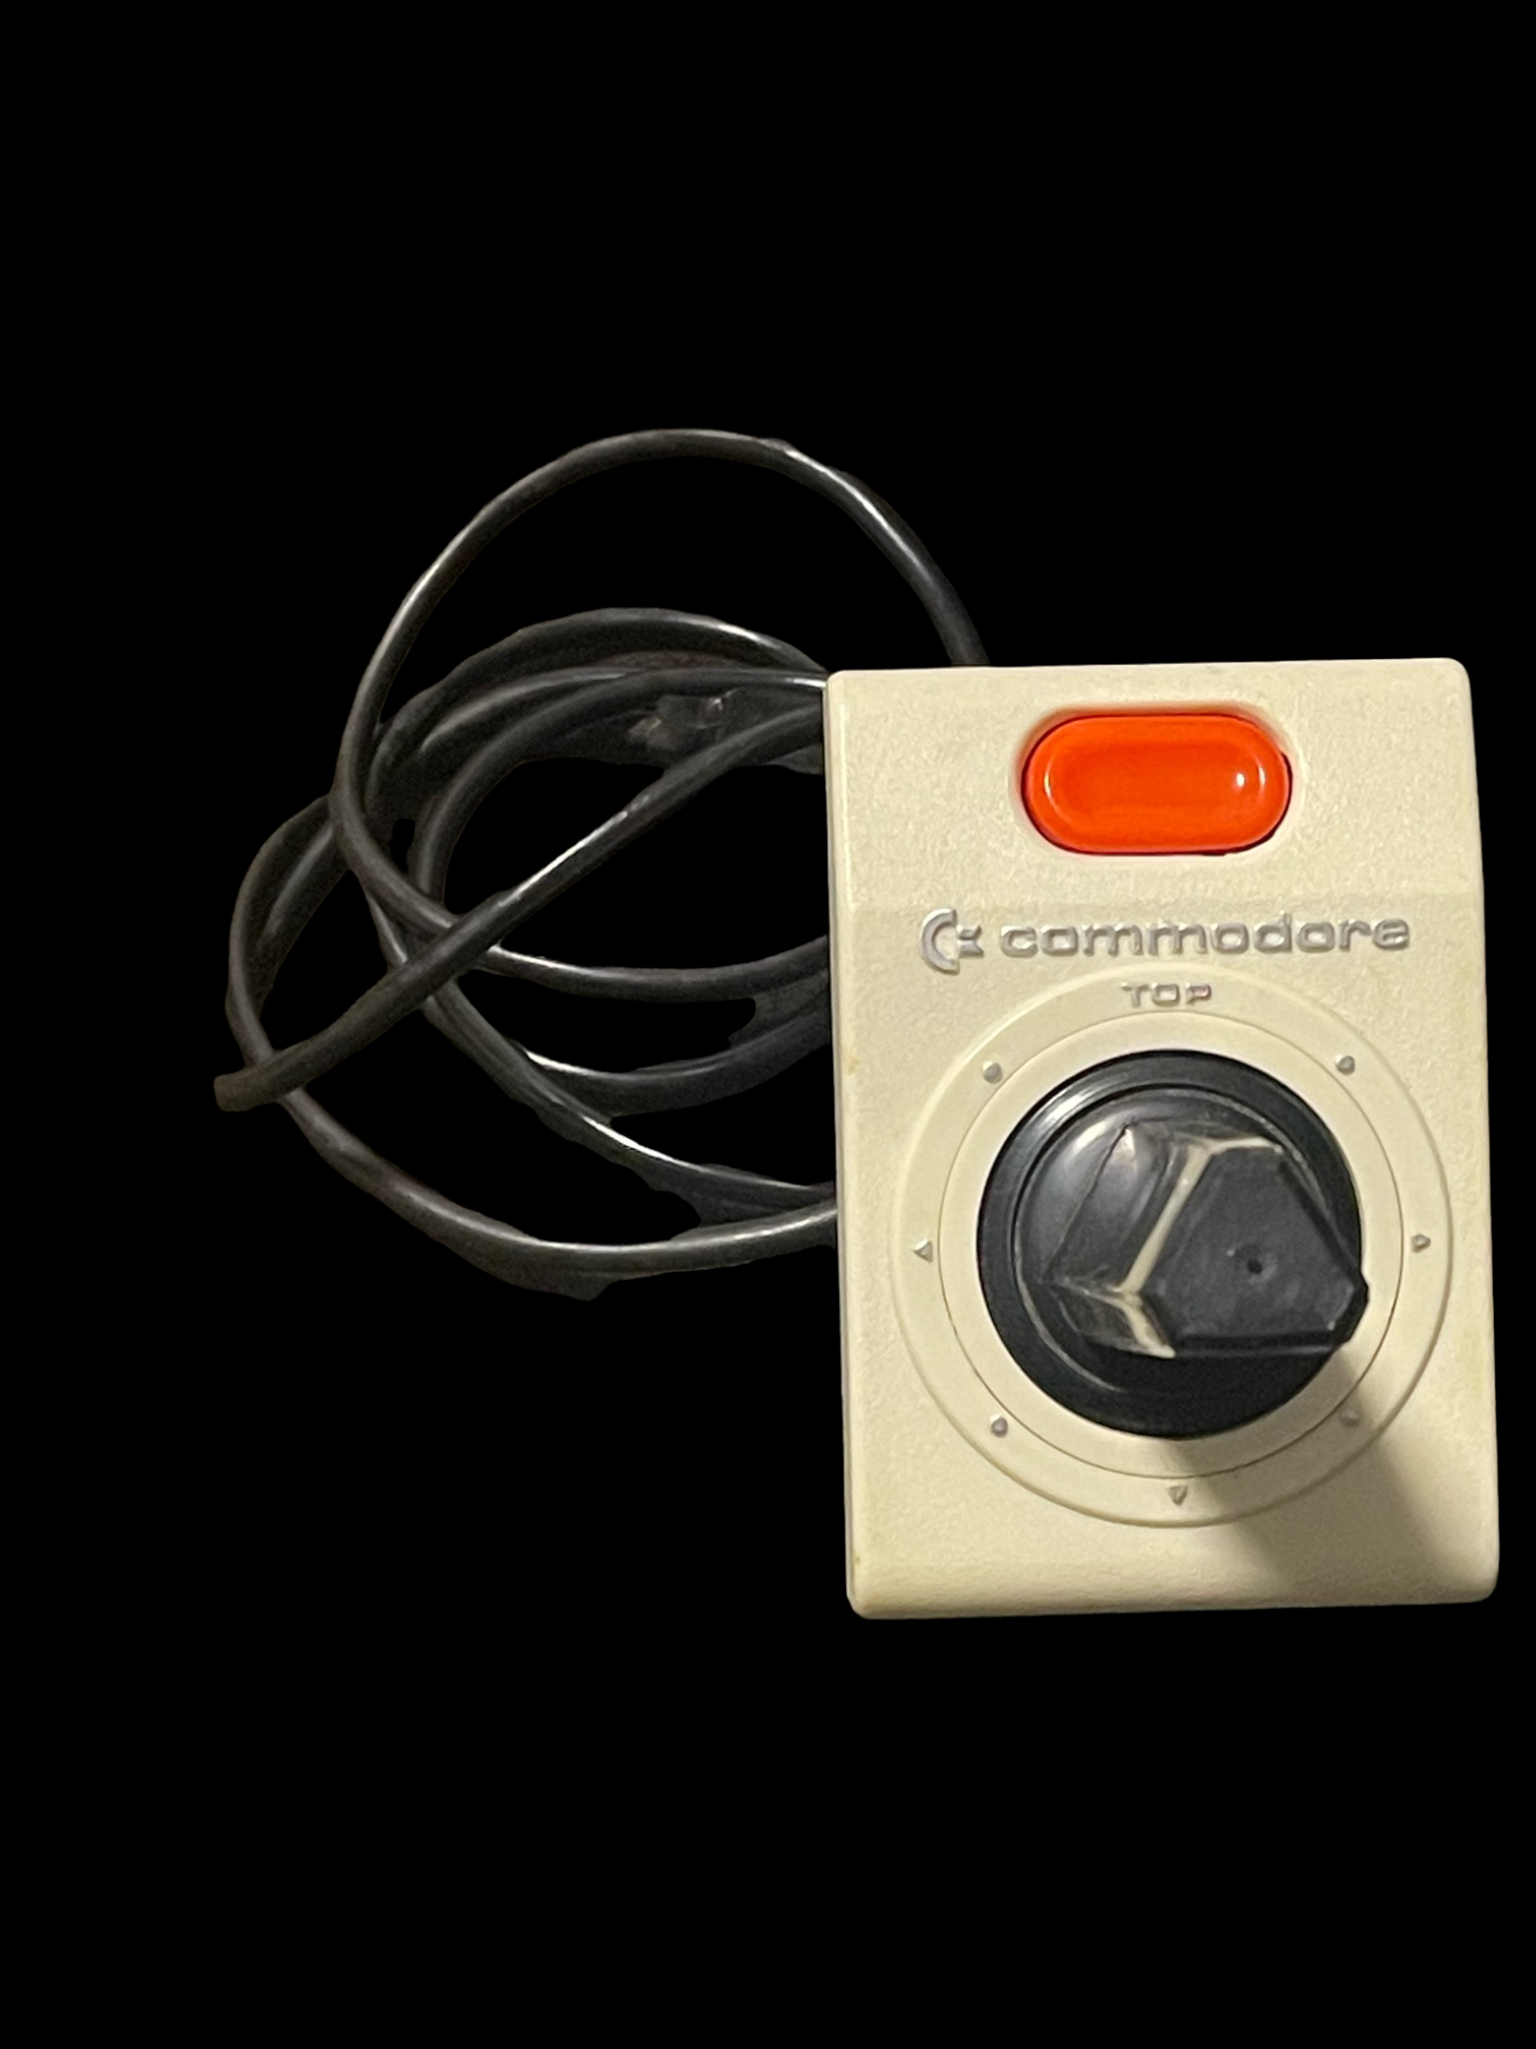 Commodore 1311